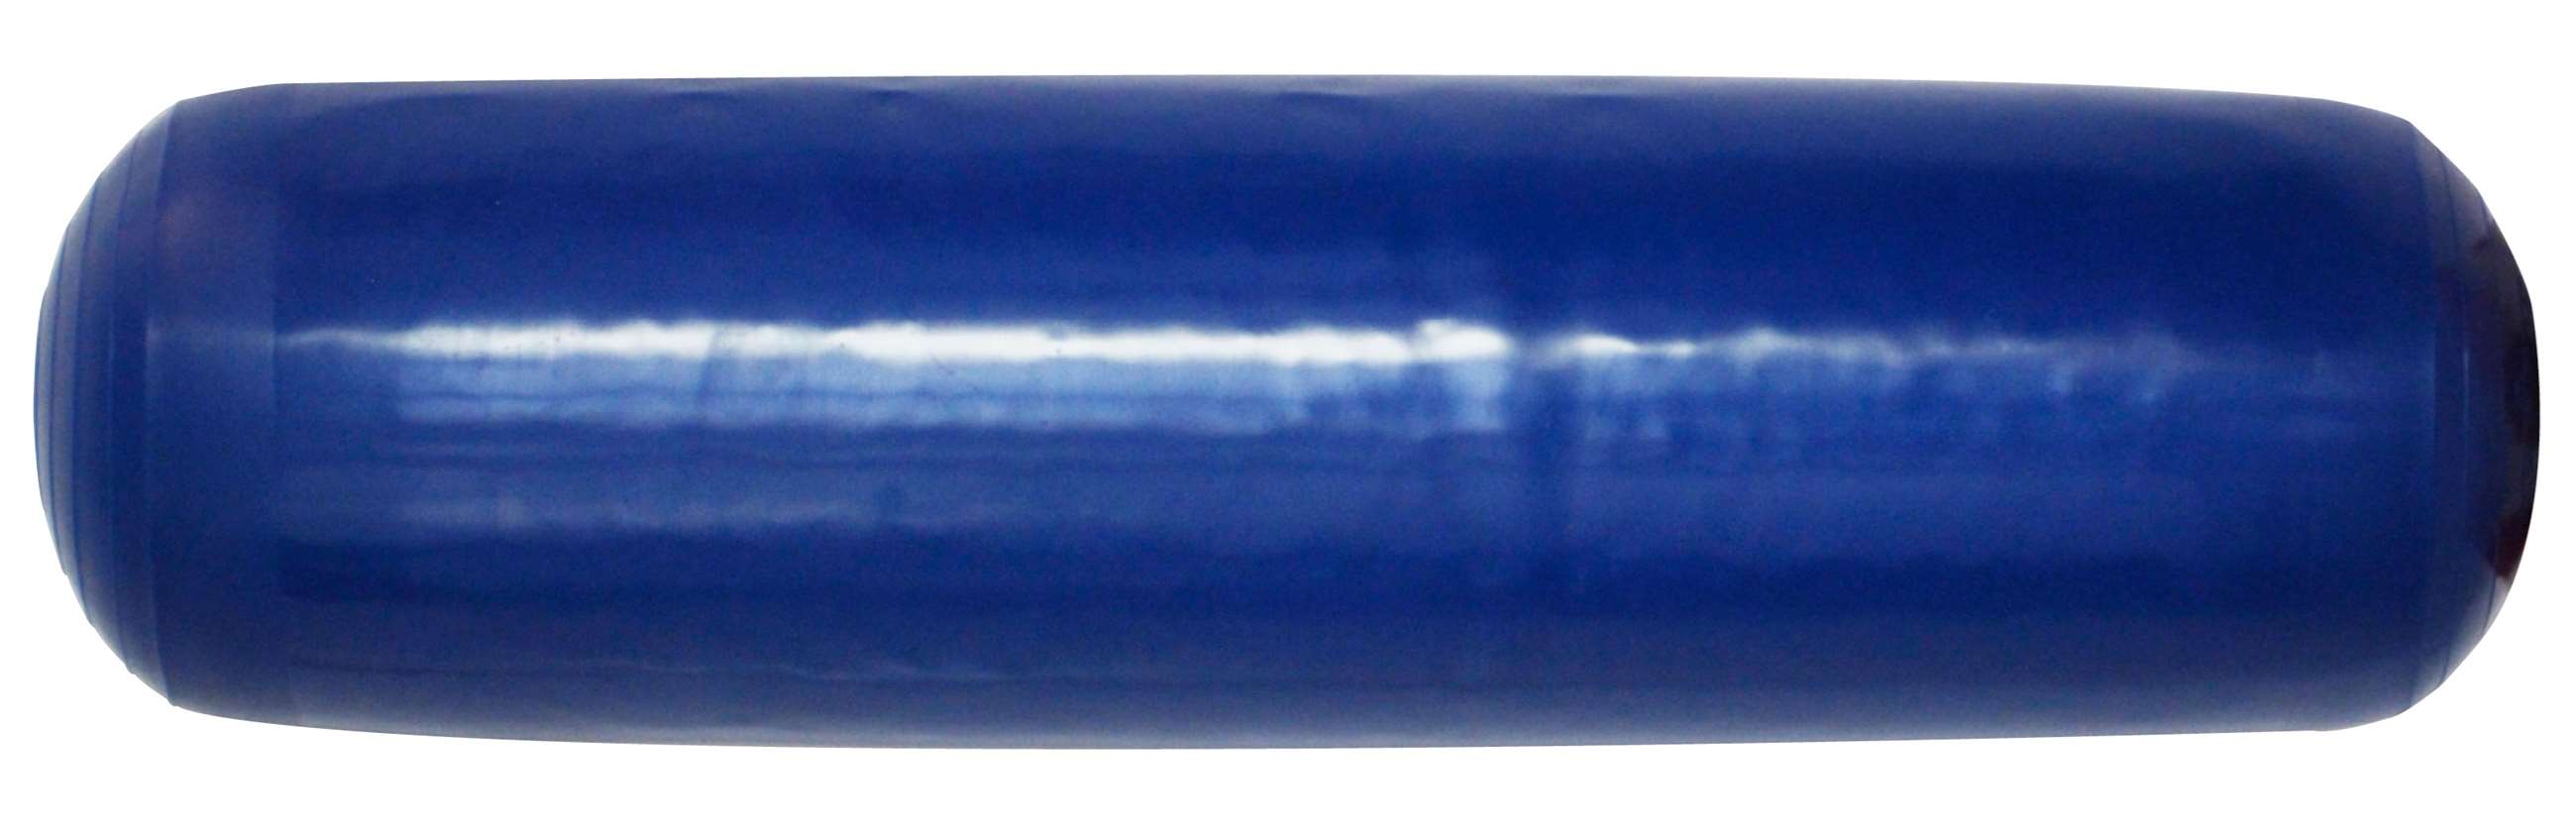 95cm float, blue